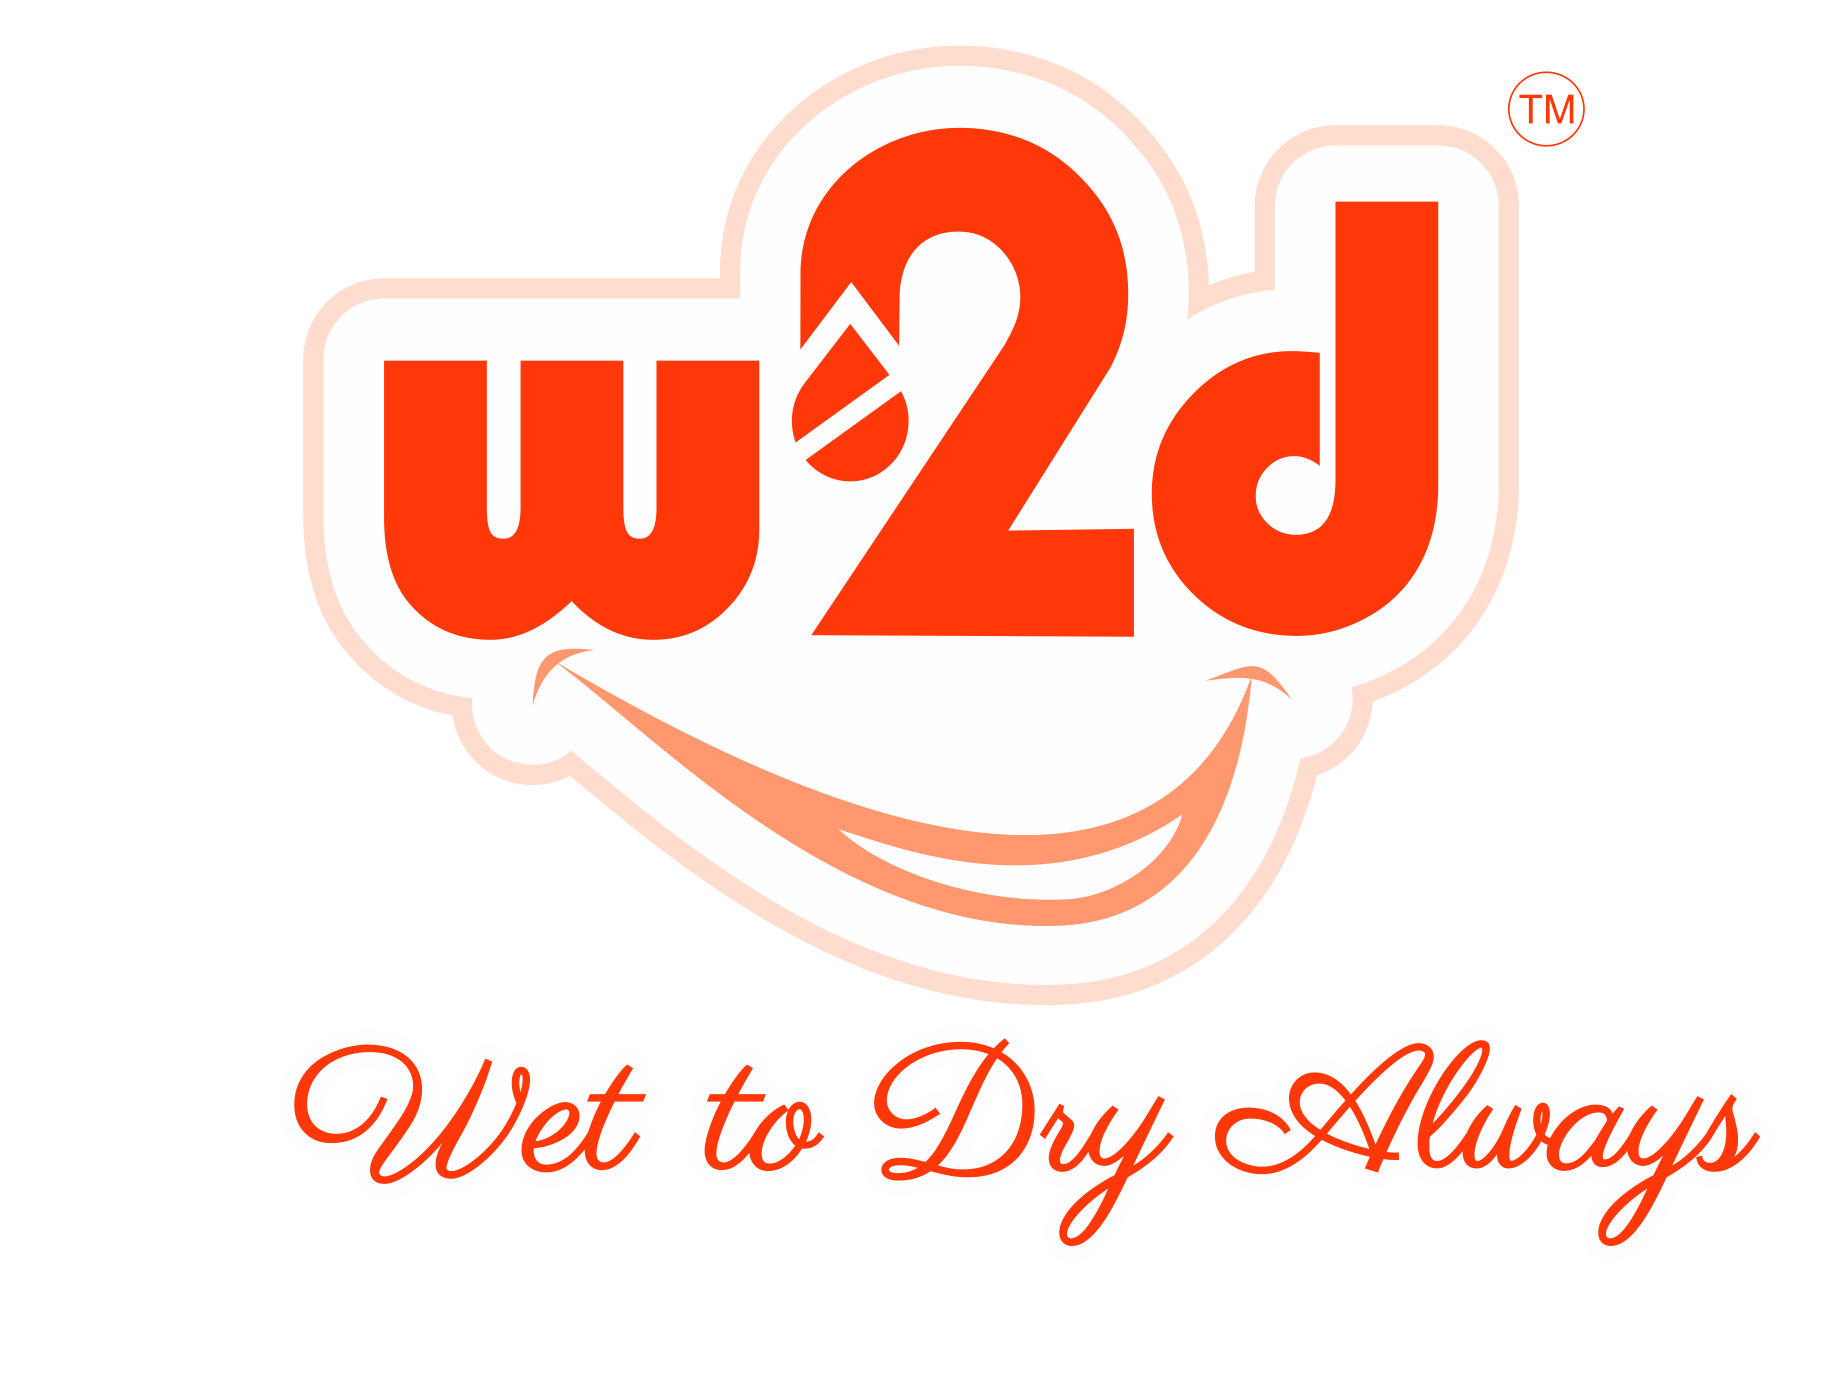 W2D